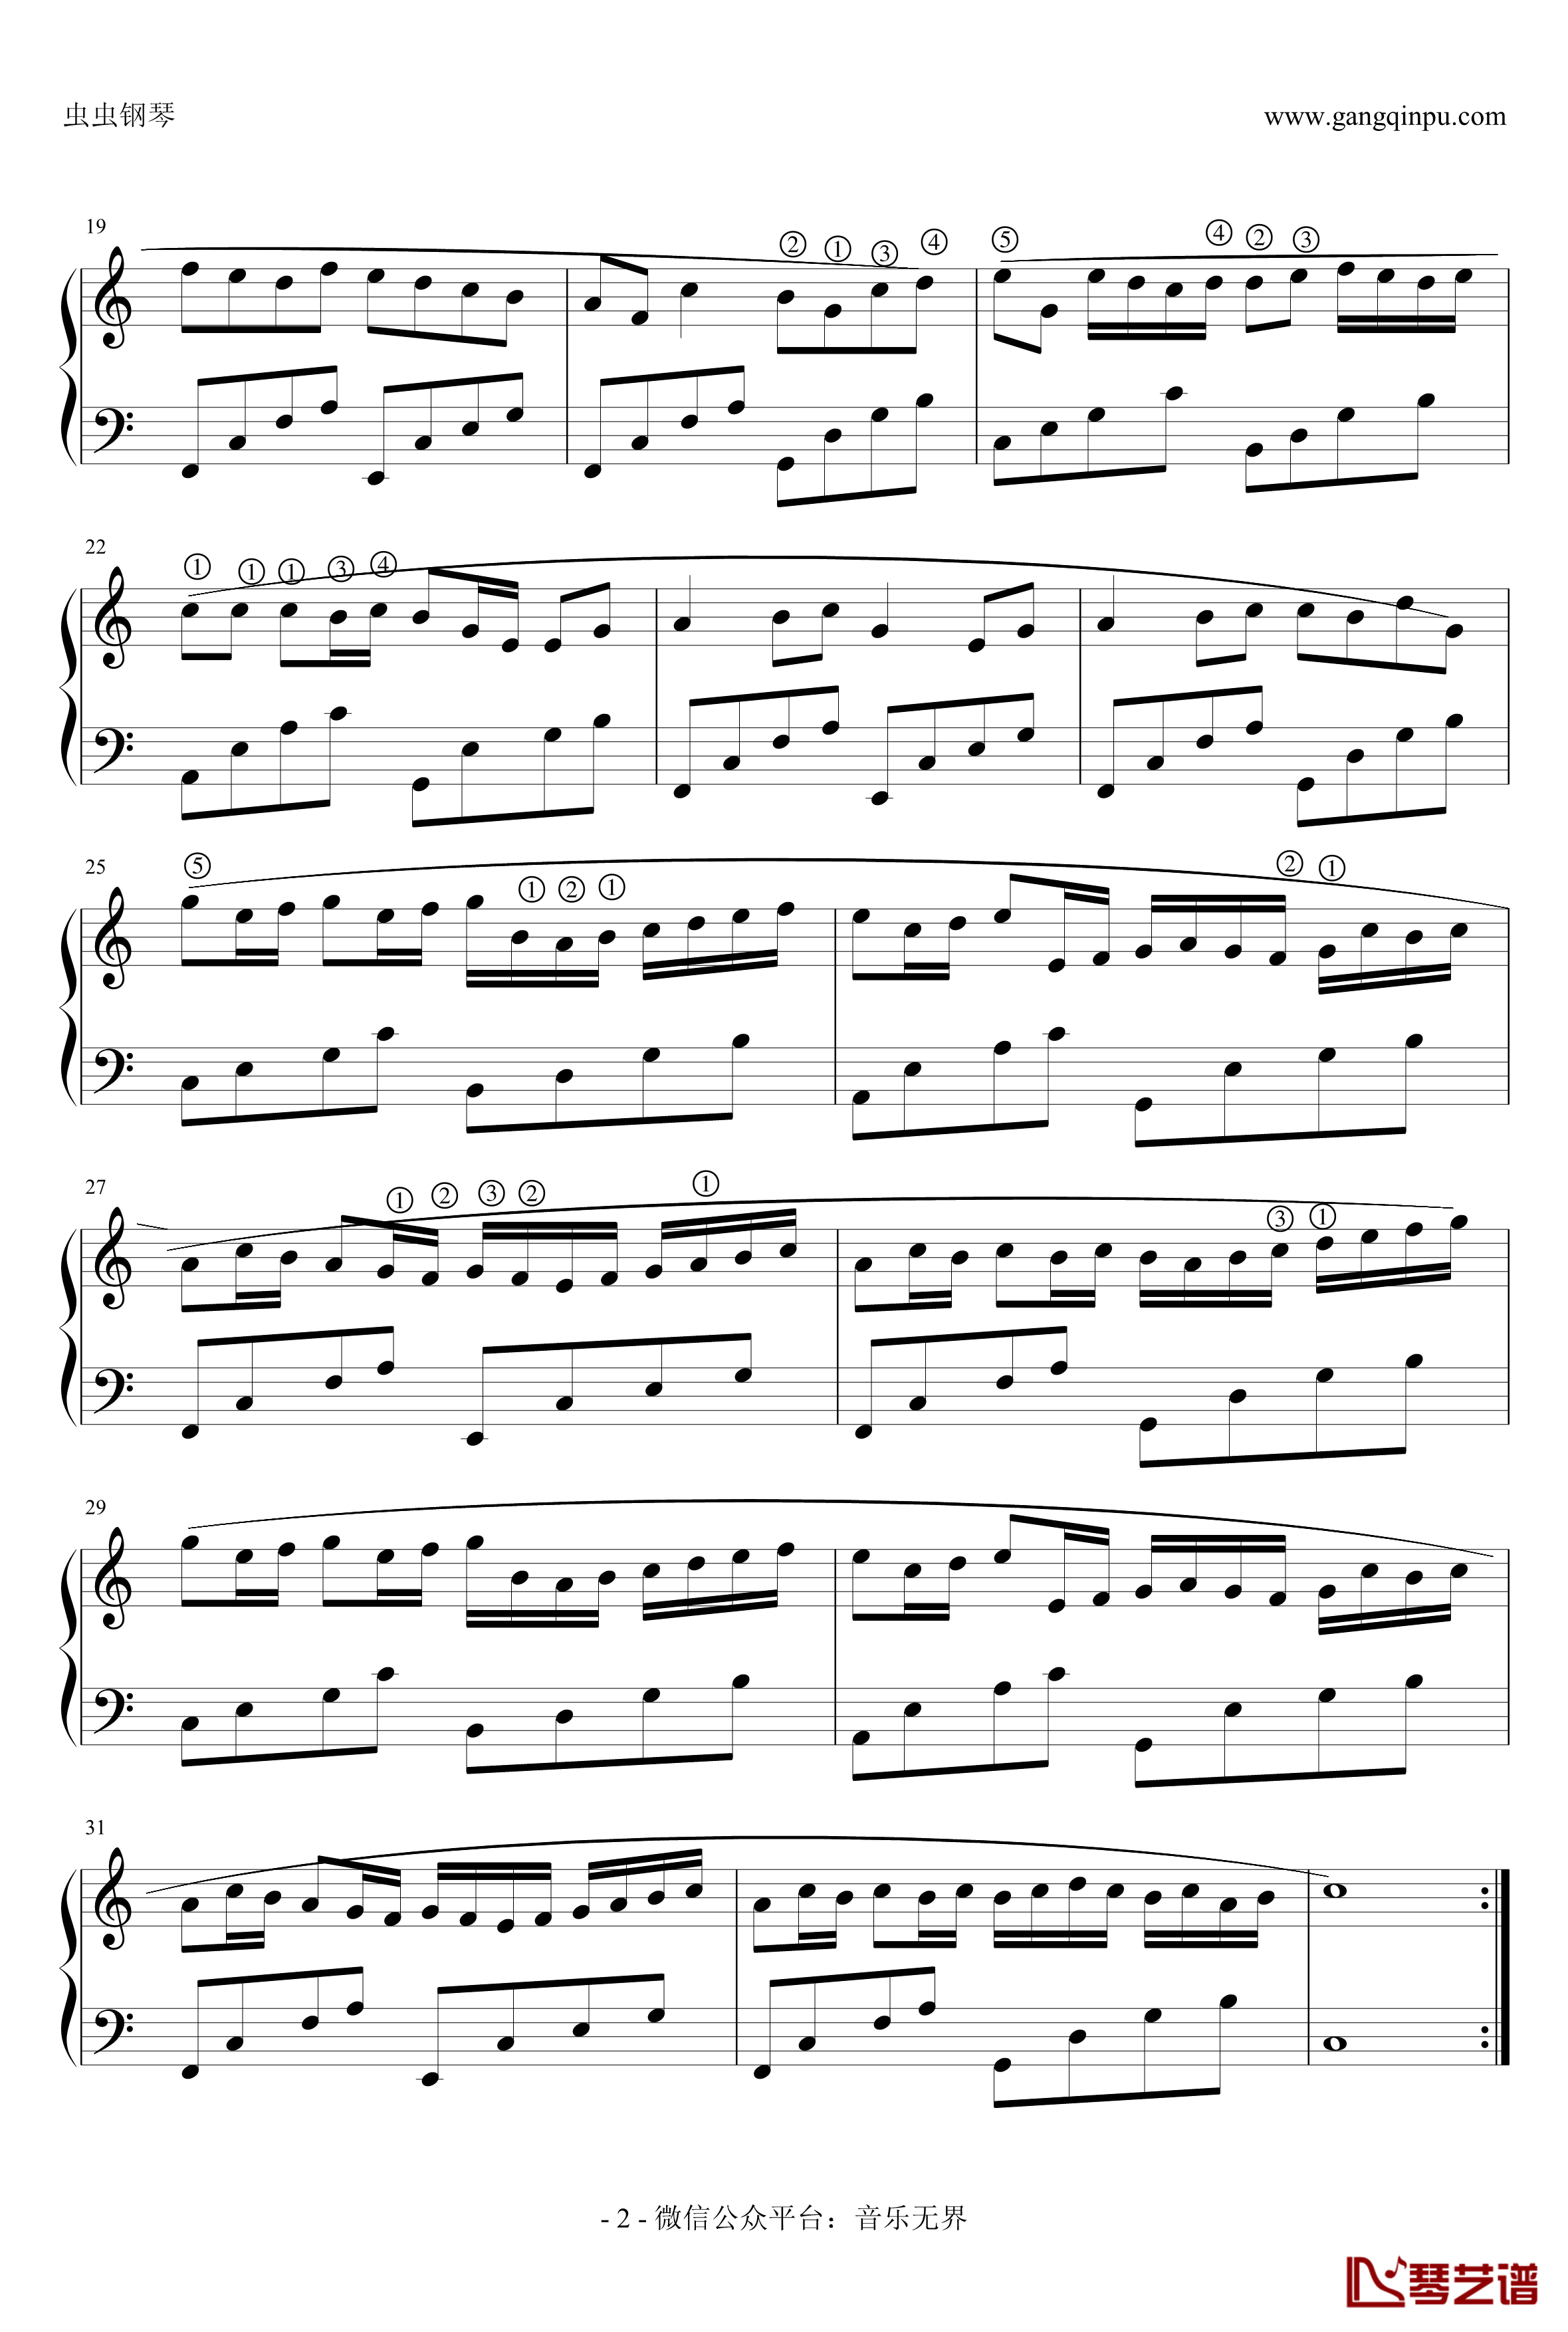 卡农钢琴谱-极简版带指法-帕赫贝尔-Pachelbel2